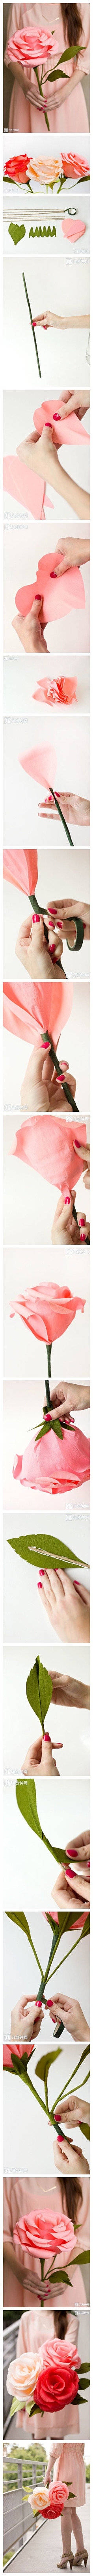 教你手工制作巨型纸玫瑰